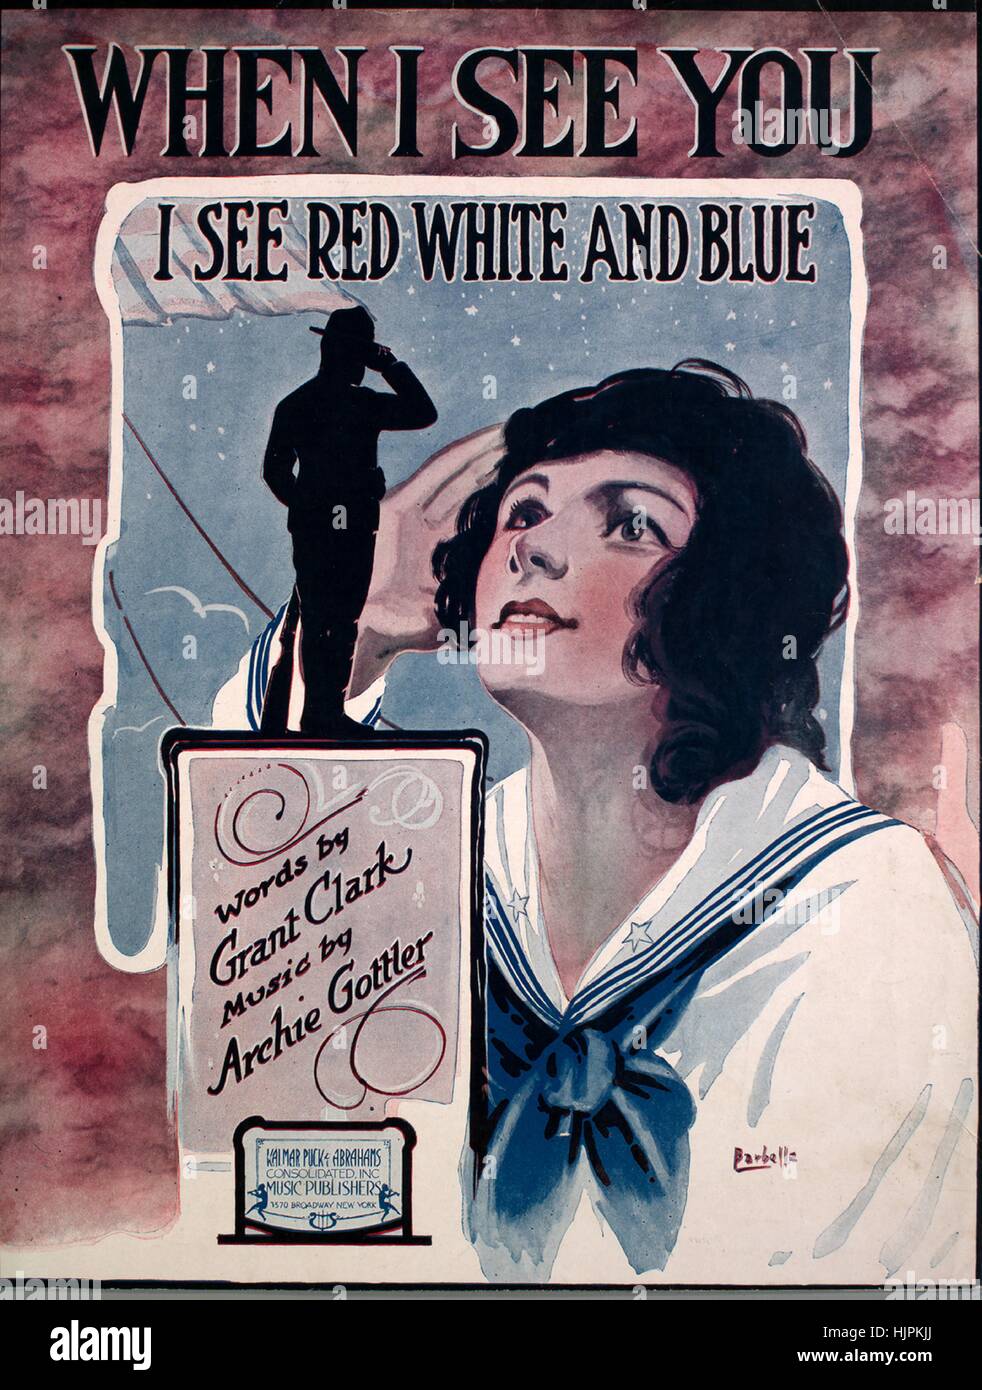 Imagen de cubierta de partituras de la canción "Cuando te veo veo (rojo,  blanco y azul)", con la autoría original notas leyendo 'palabras por Grant  Clark música de Archie Gottler', Estados Unidos,